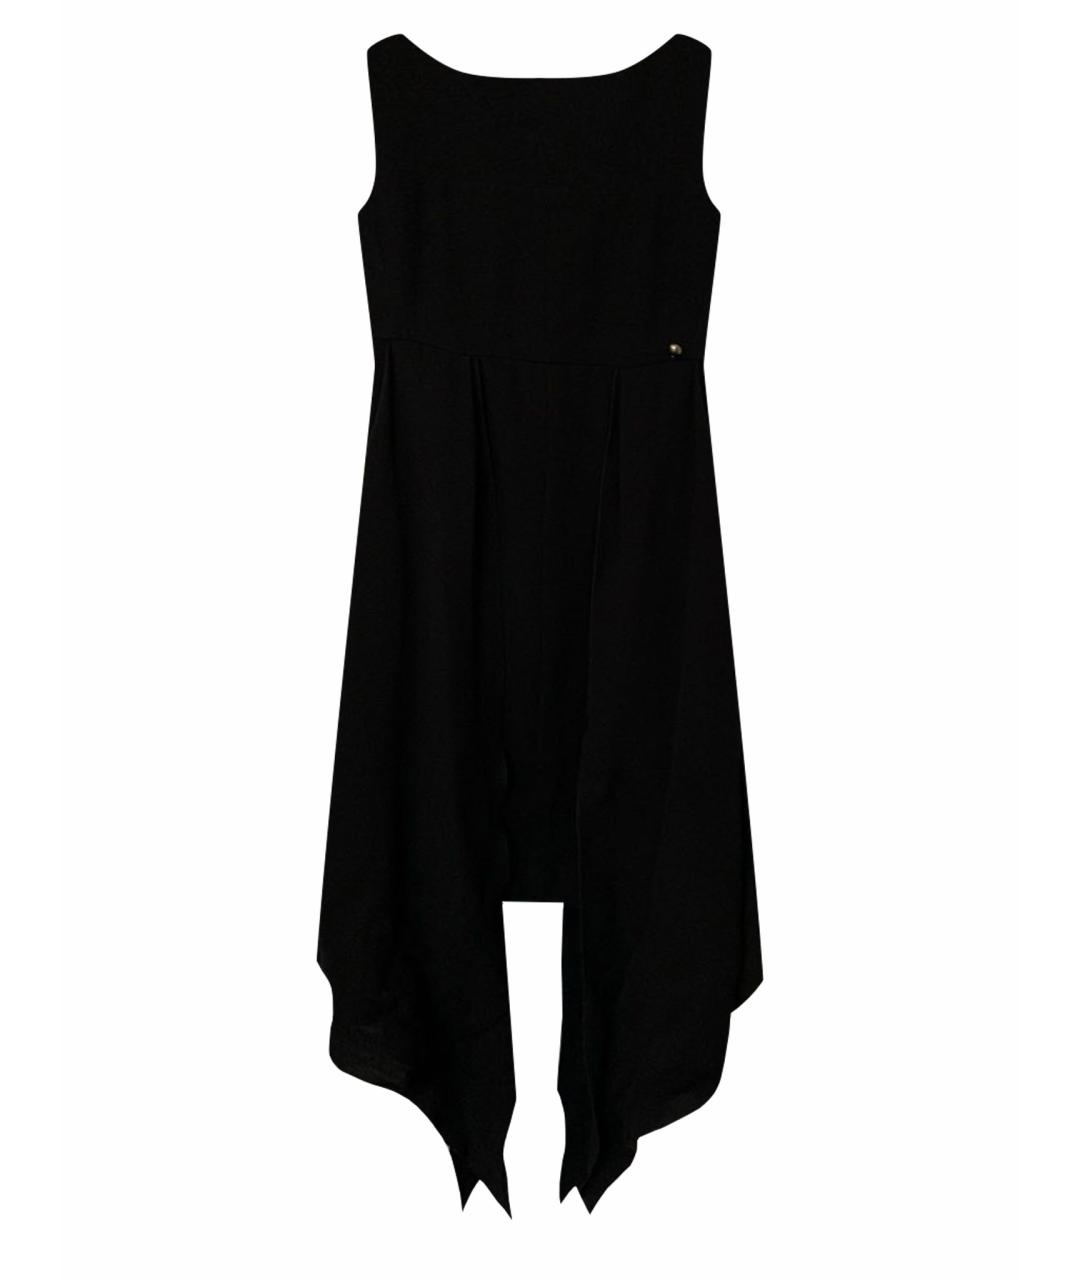 CHANEL PRE-OWNED Черное шелковое коктейльное платье, фото 1